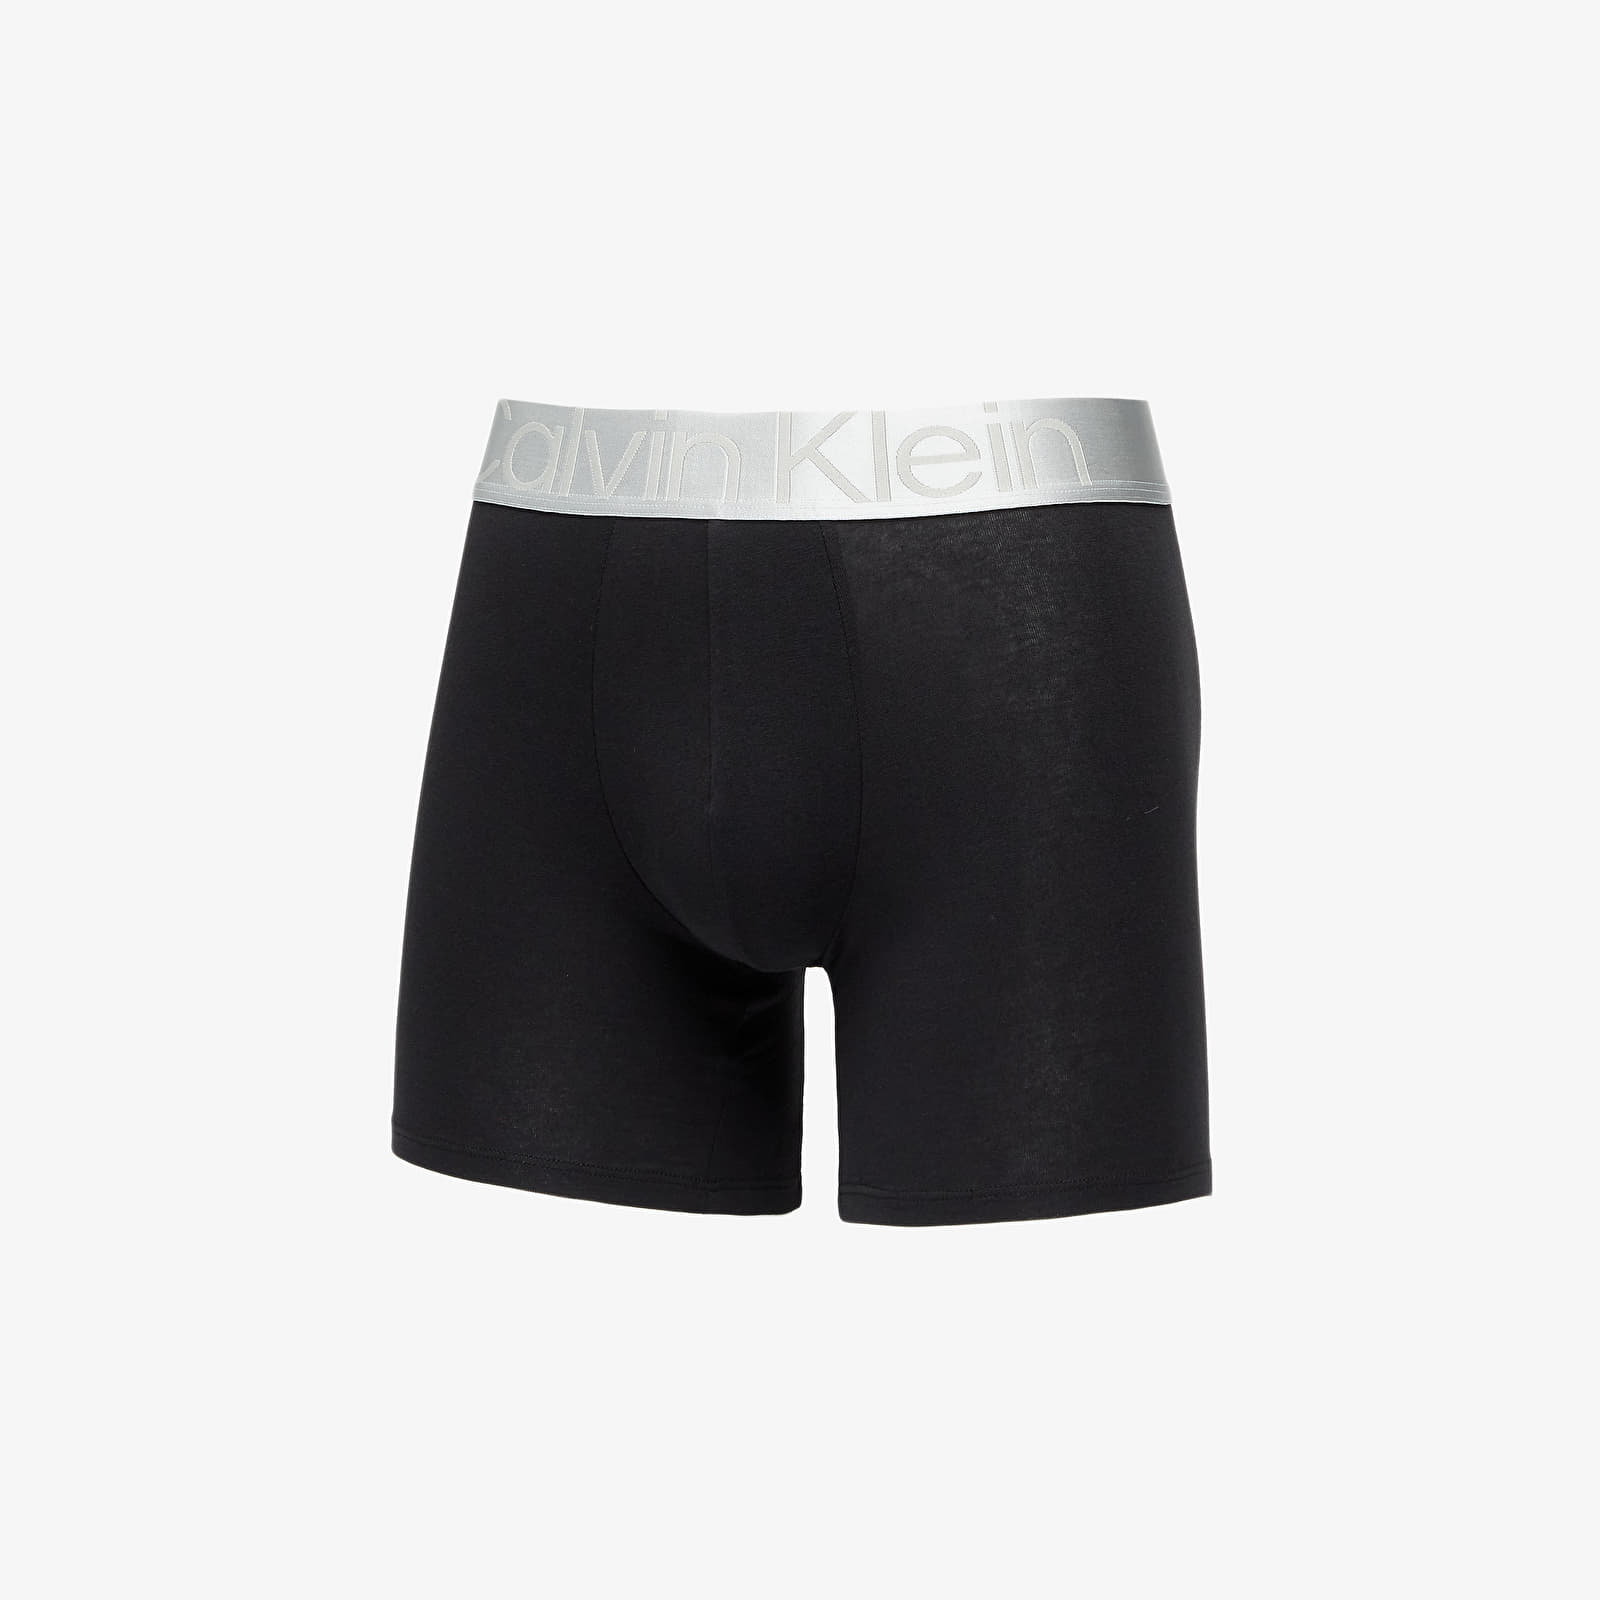 Boxer shorts Calvin Klein Reconsidered Steel Cotton Boxer Brief 3